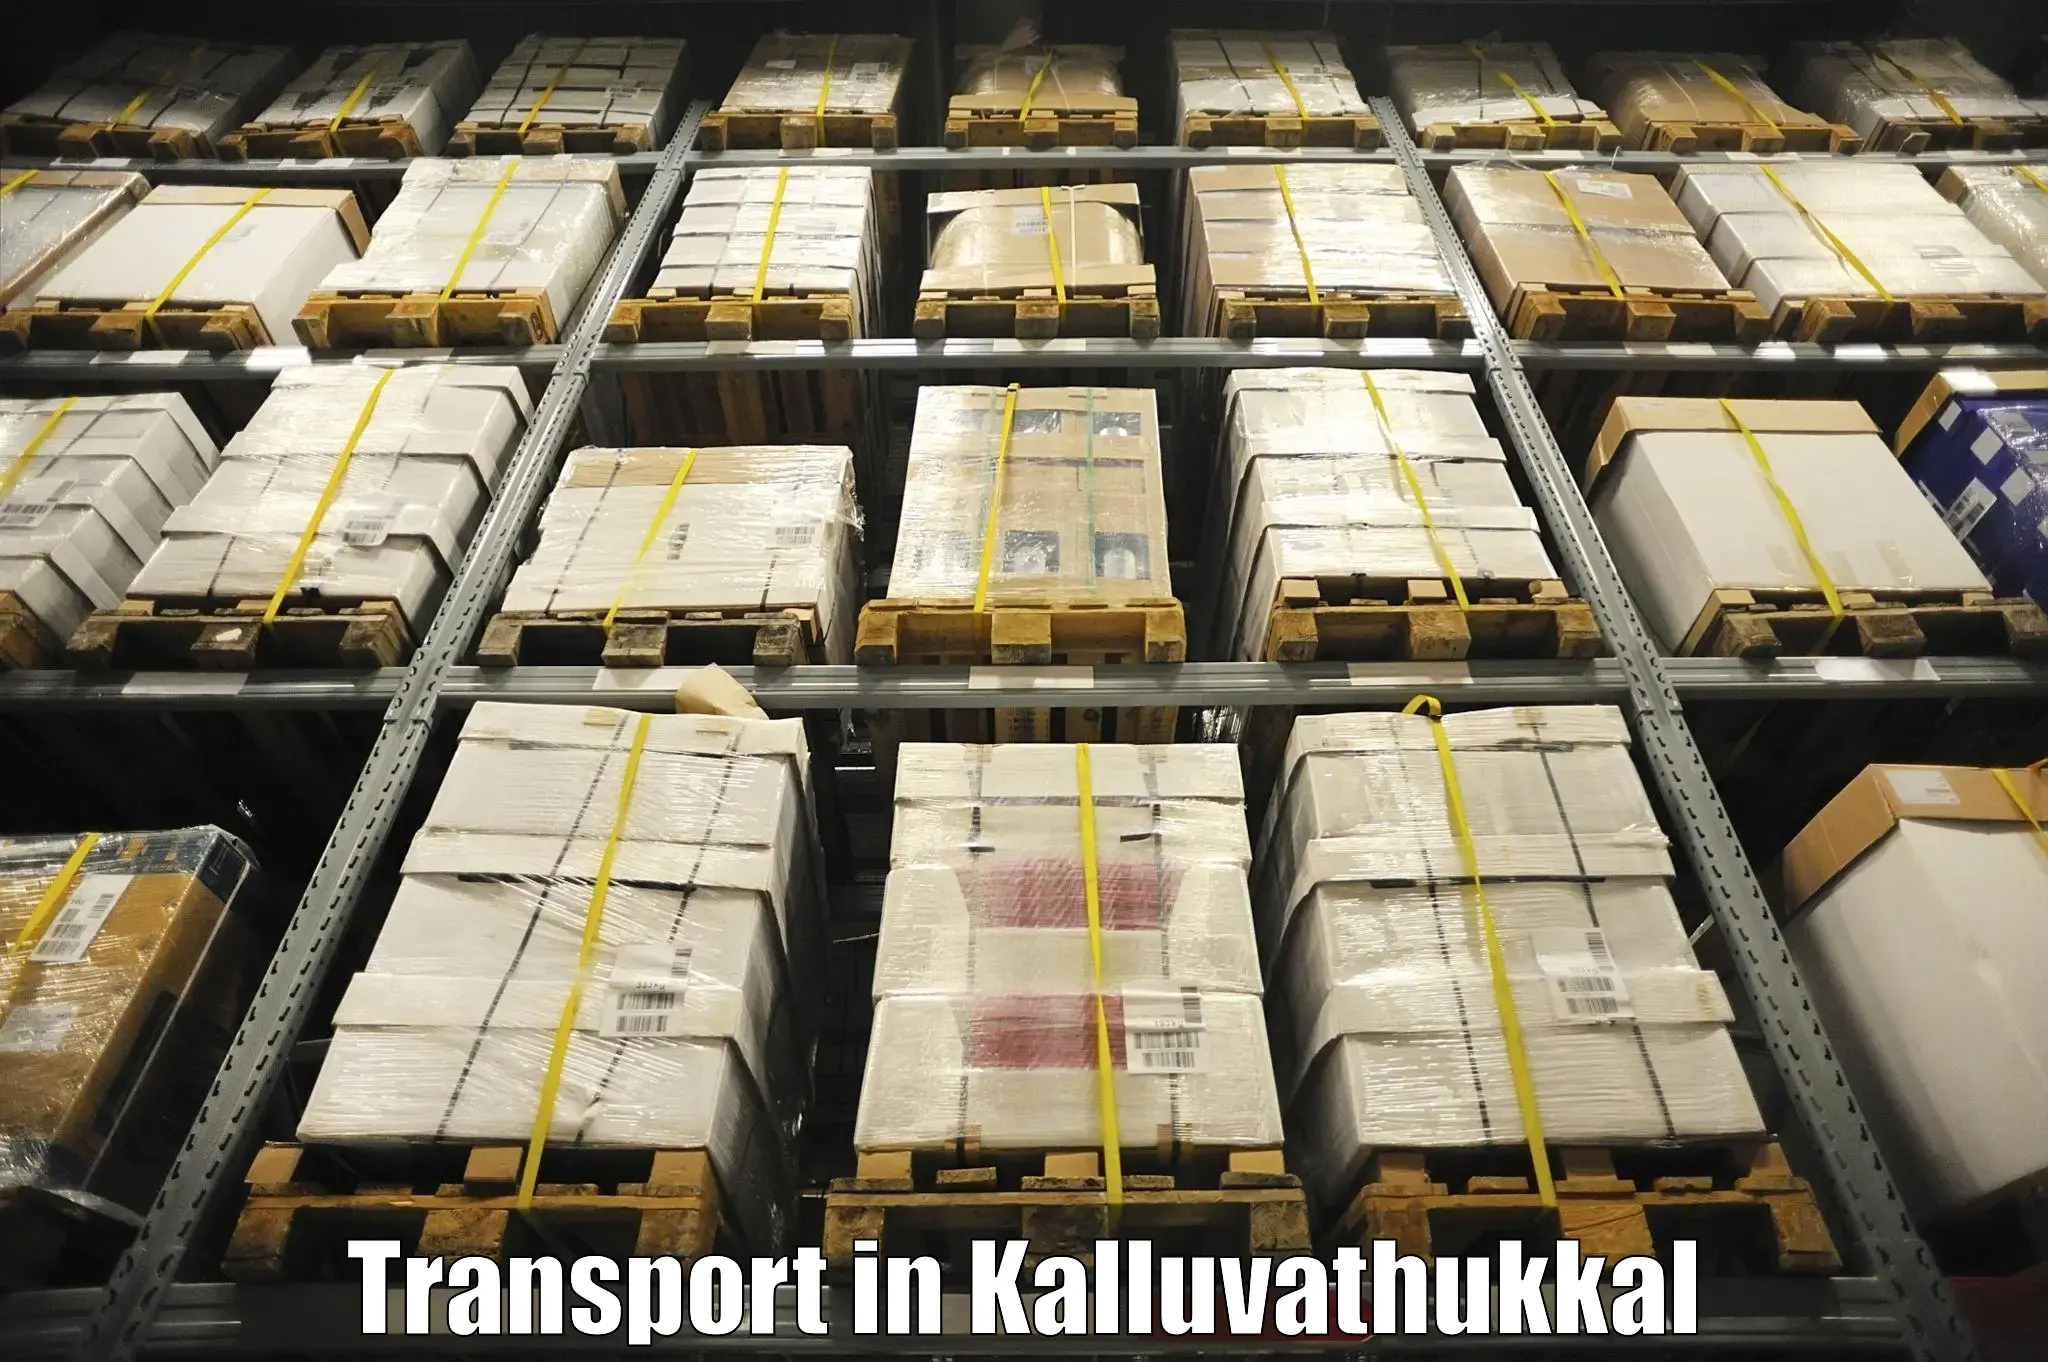 Cargo transportation services in Kalluvathukkal